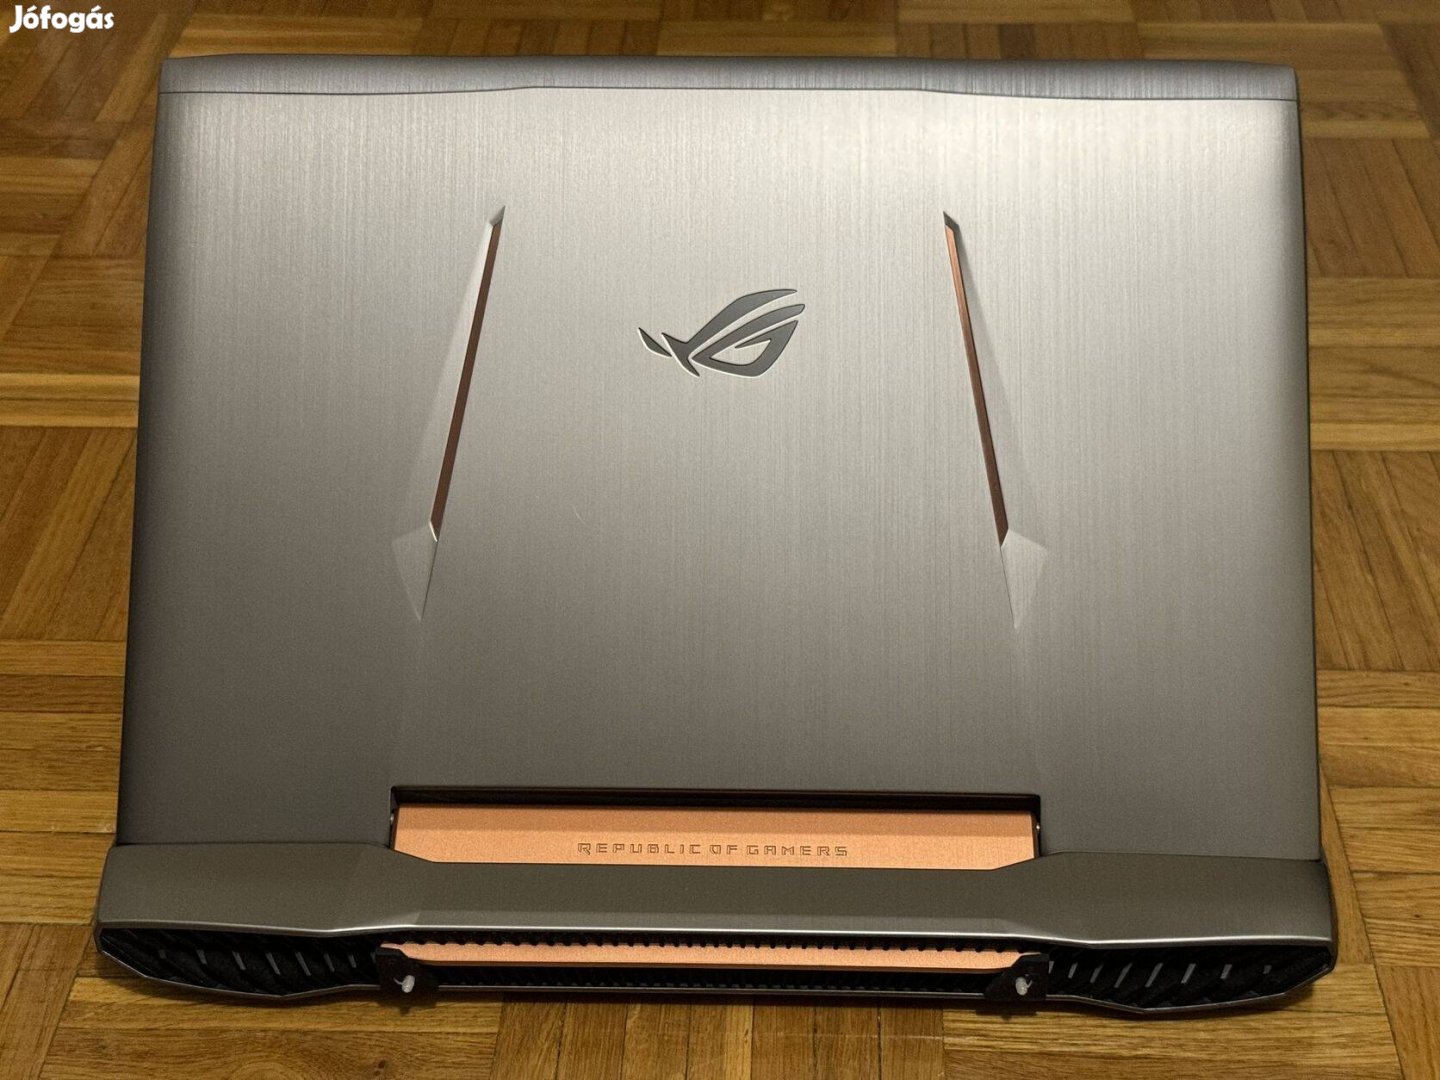 Nagy képernyős Asus rog gamer laptop eladó! Dupla hűtés!